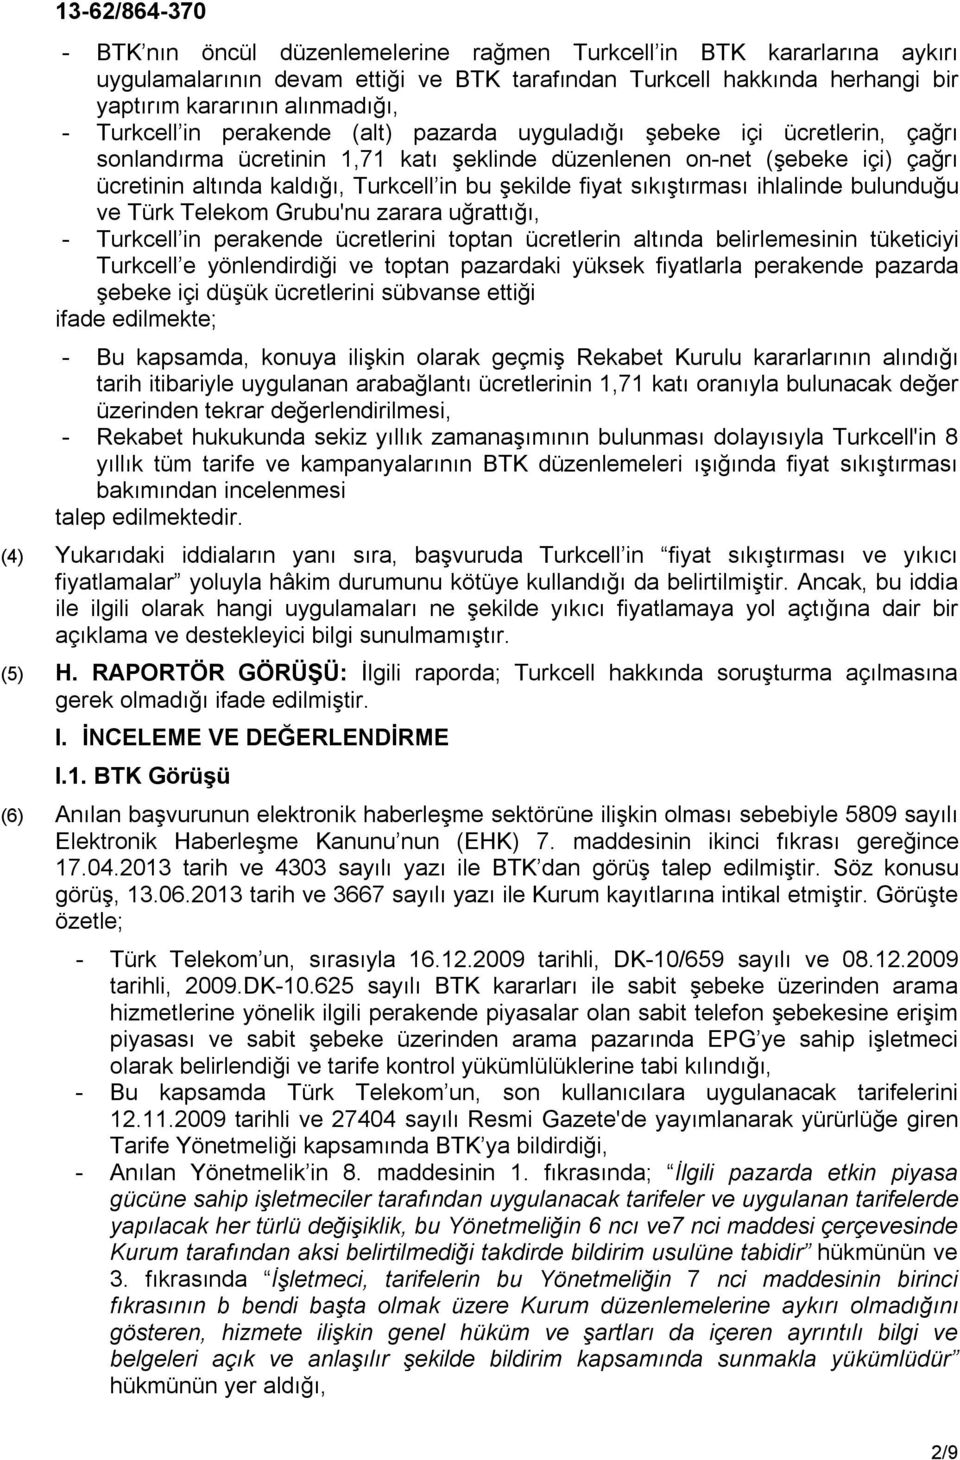 sıkıştırması ihlalinde bulunduğu ve Türk Telekom Grubu'nu zarara uğrattığı, - Turkcell in perakende ücretlerini toptan ücretlerin altında belirlemesinin tüketiciyi Turkcell e yönlendirdiği ve toptan